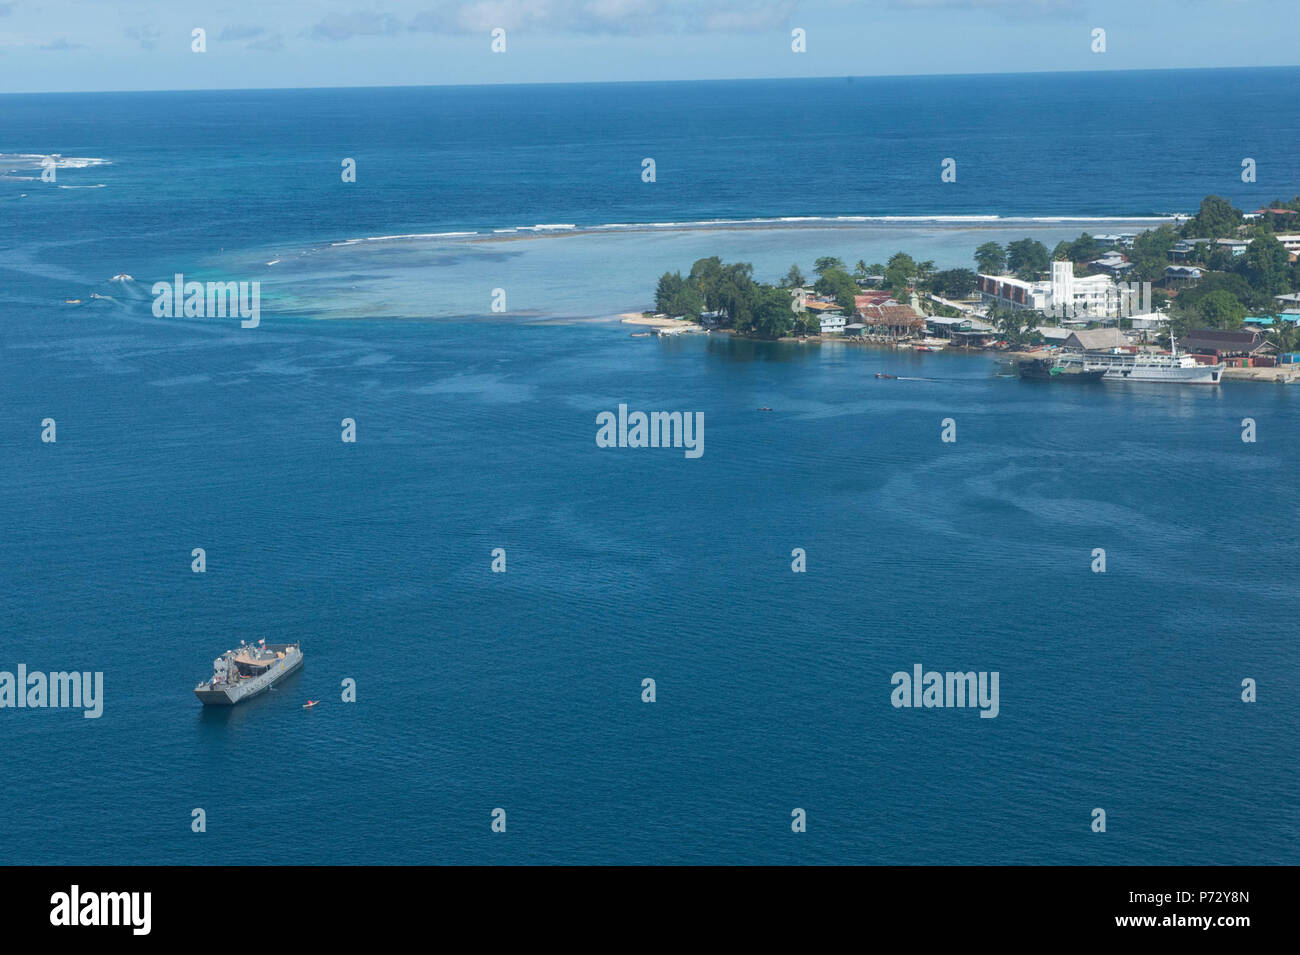 GIZO, Îles Salomon (5 août 2013) - Une unité de débarquement de la marine  américaine (LCU) se trouve au large de la côte de Gizo après le transport  du personnel du Pacifique